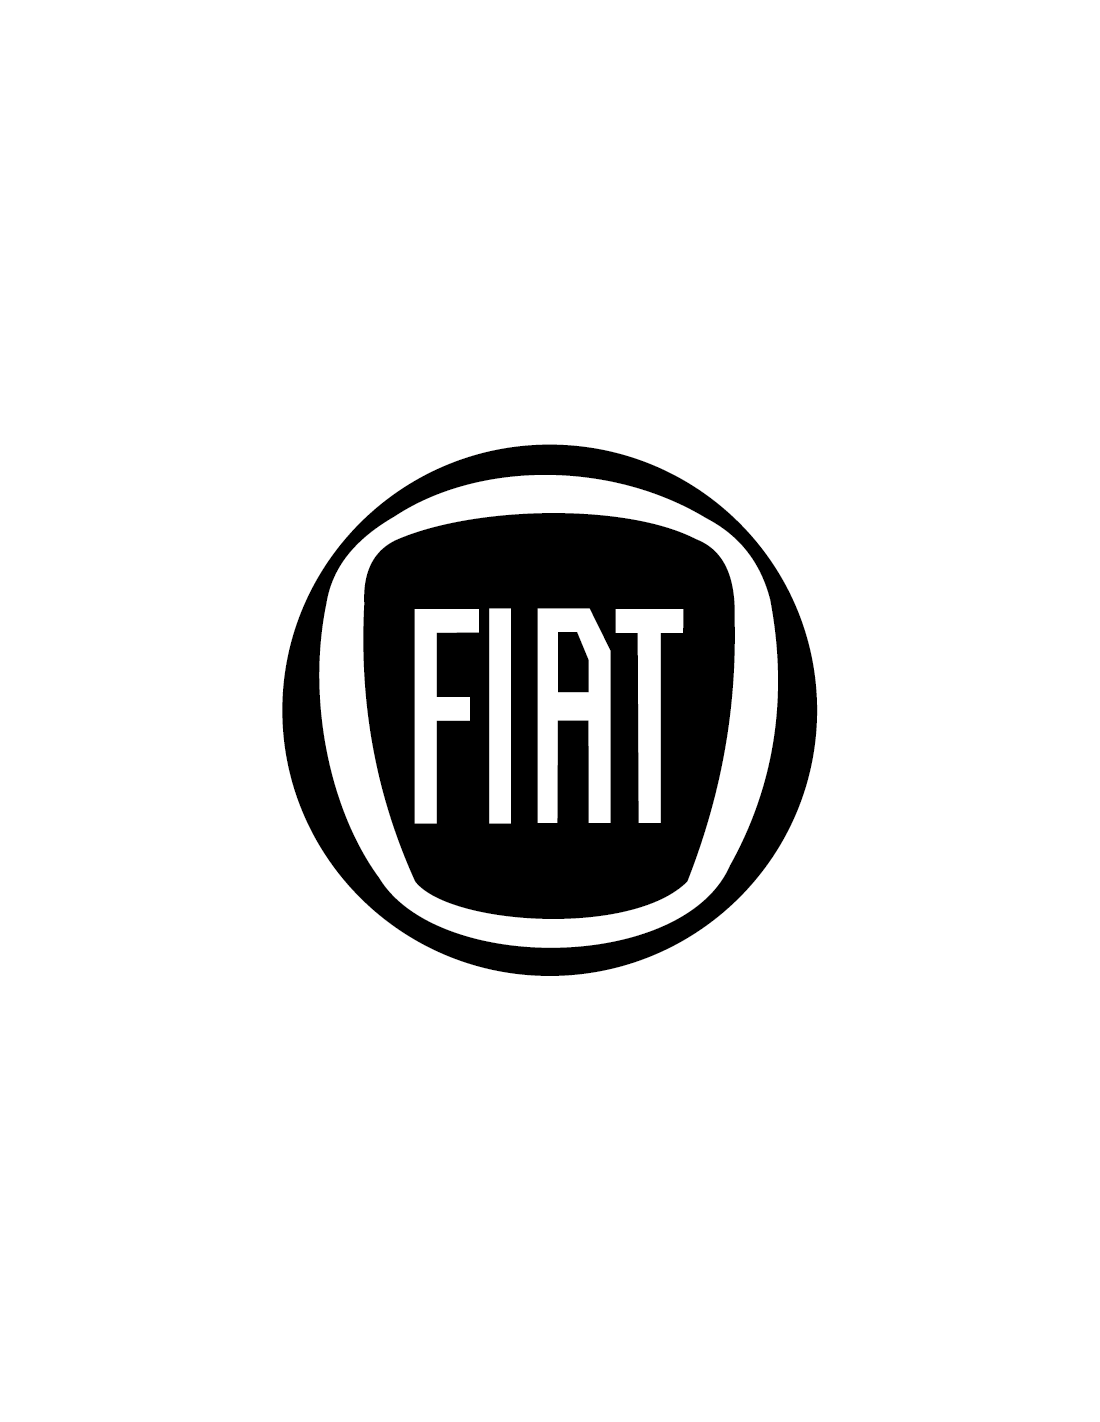 Logo Fiat - Adesivo Prespaziato - AdesiviStore